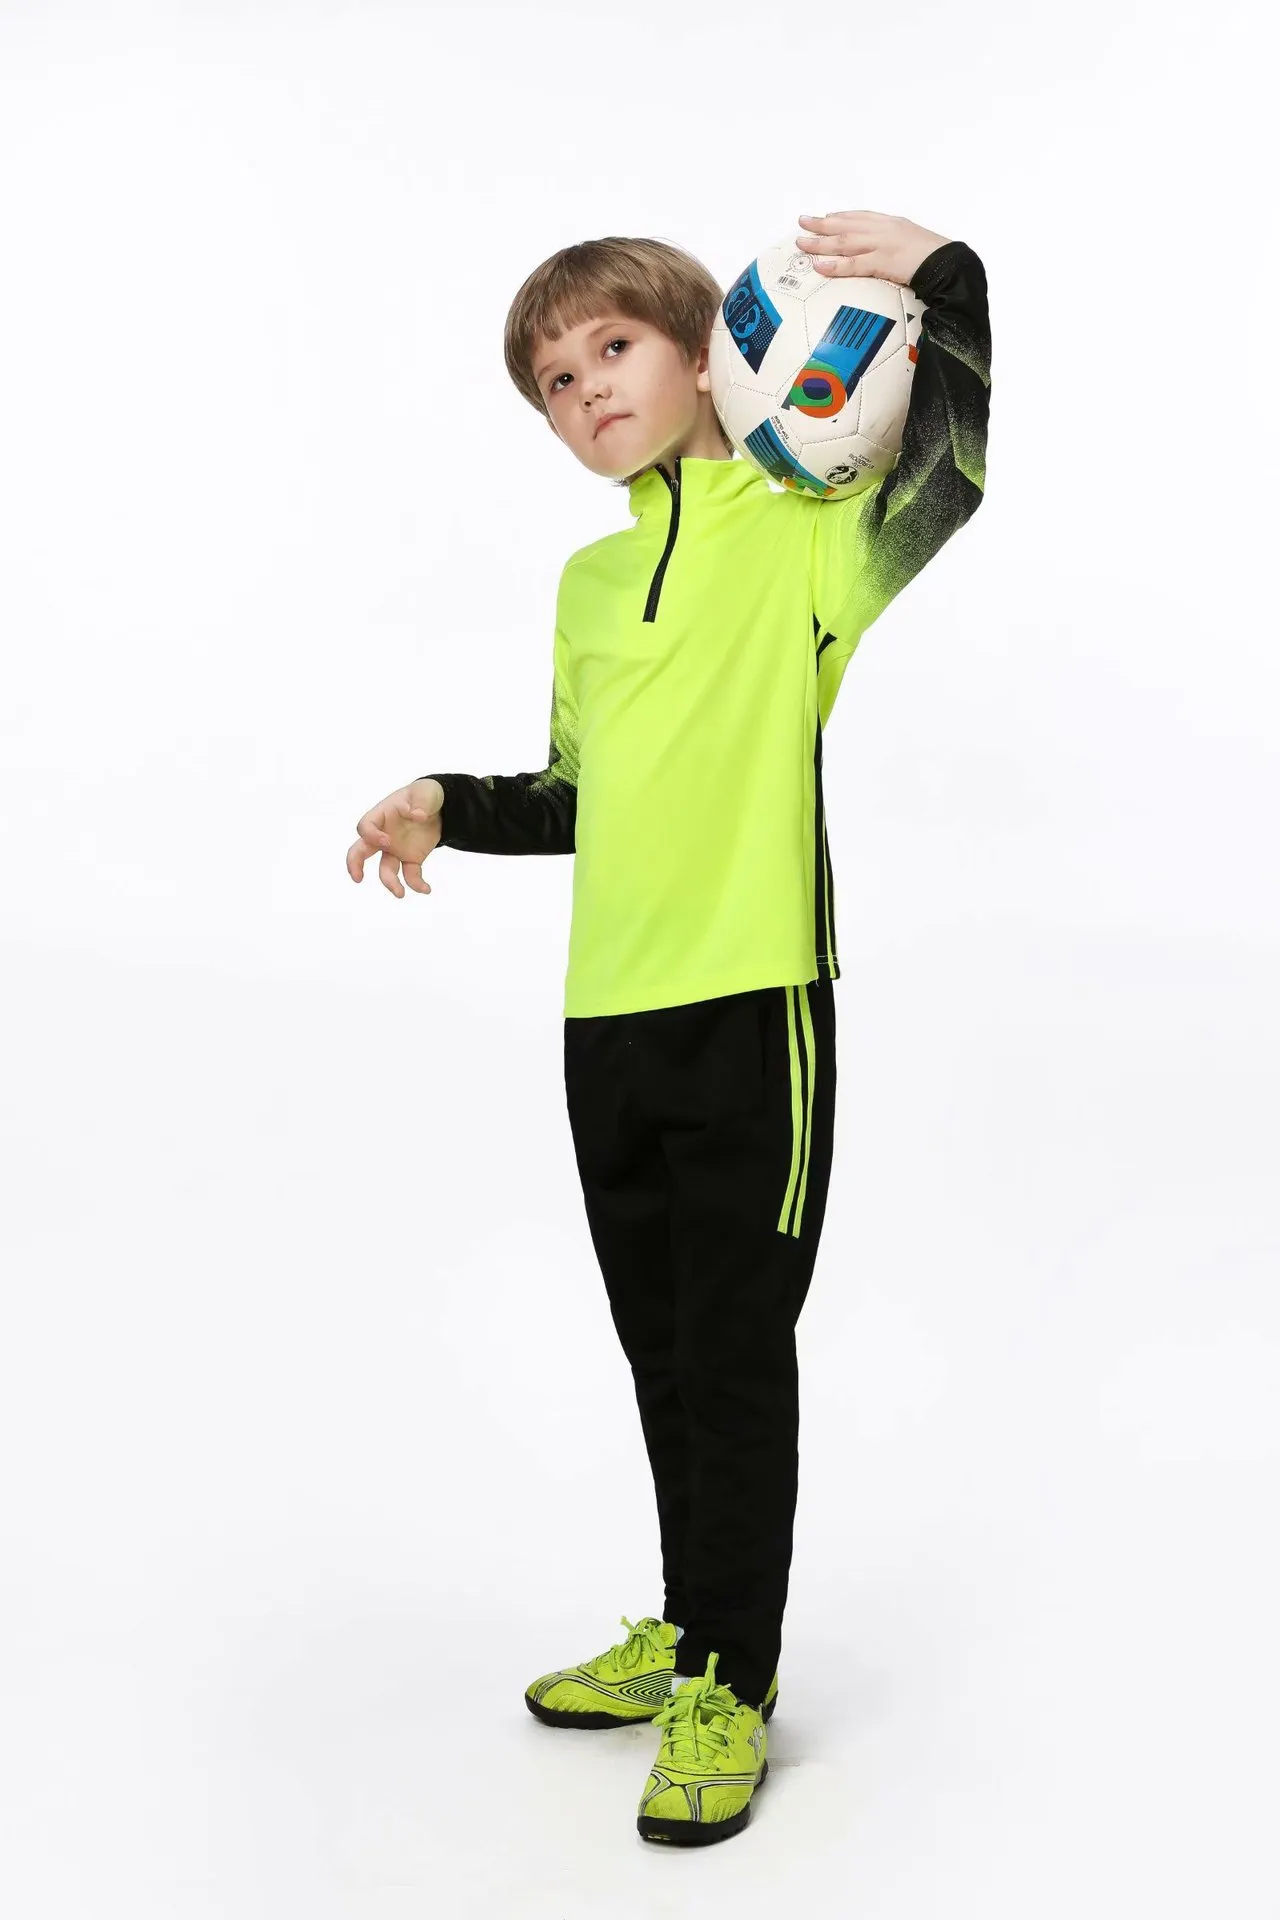 Jessie kicks #GE02 Modne koszulki Traavis Scoott Low Design 2021 Odzież dziecięca Ourtdoor Sport